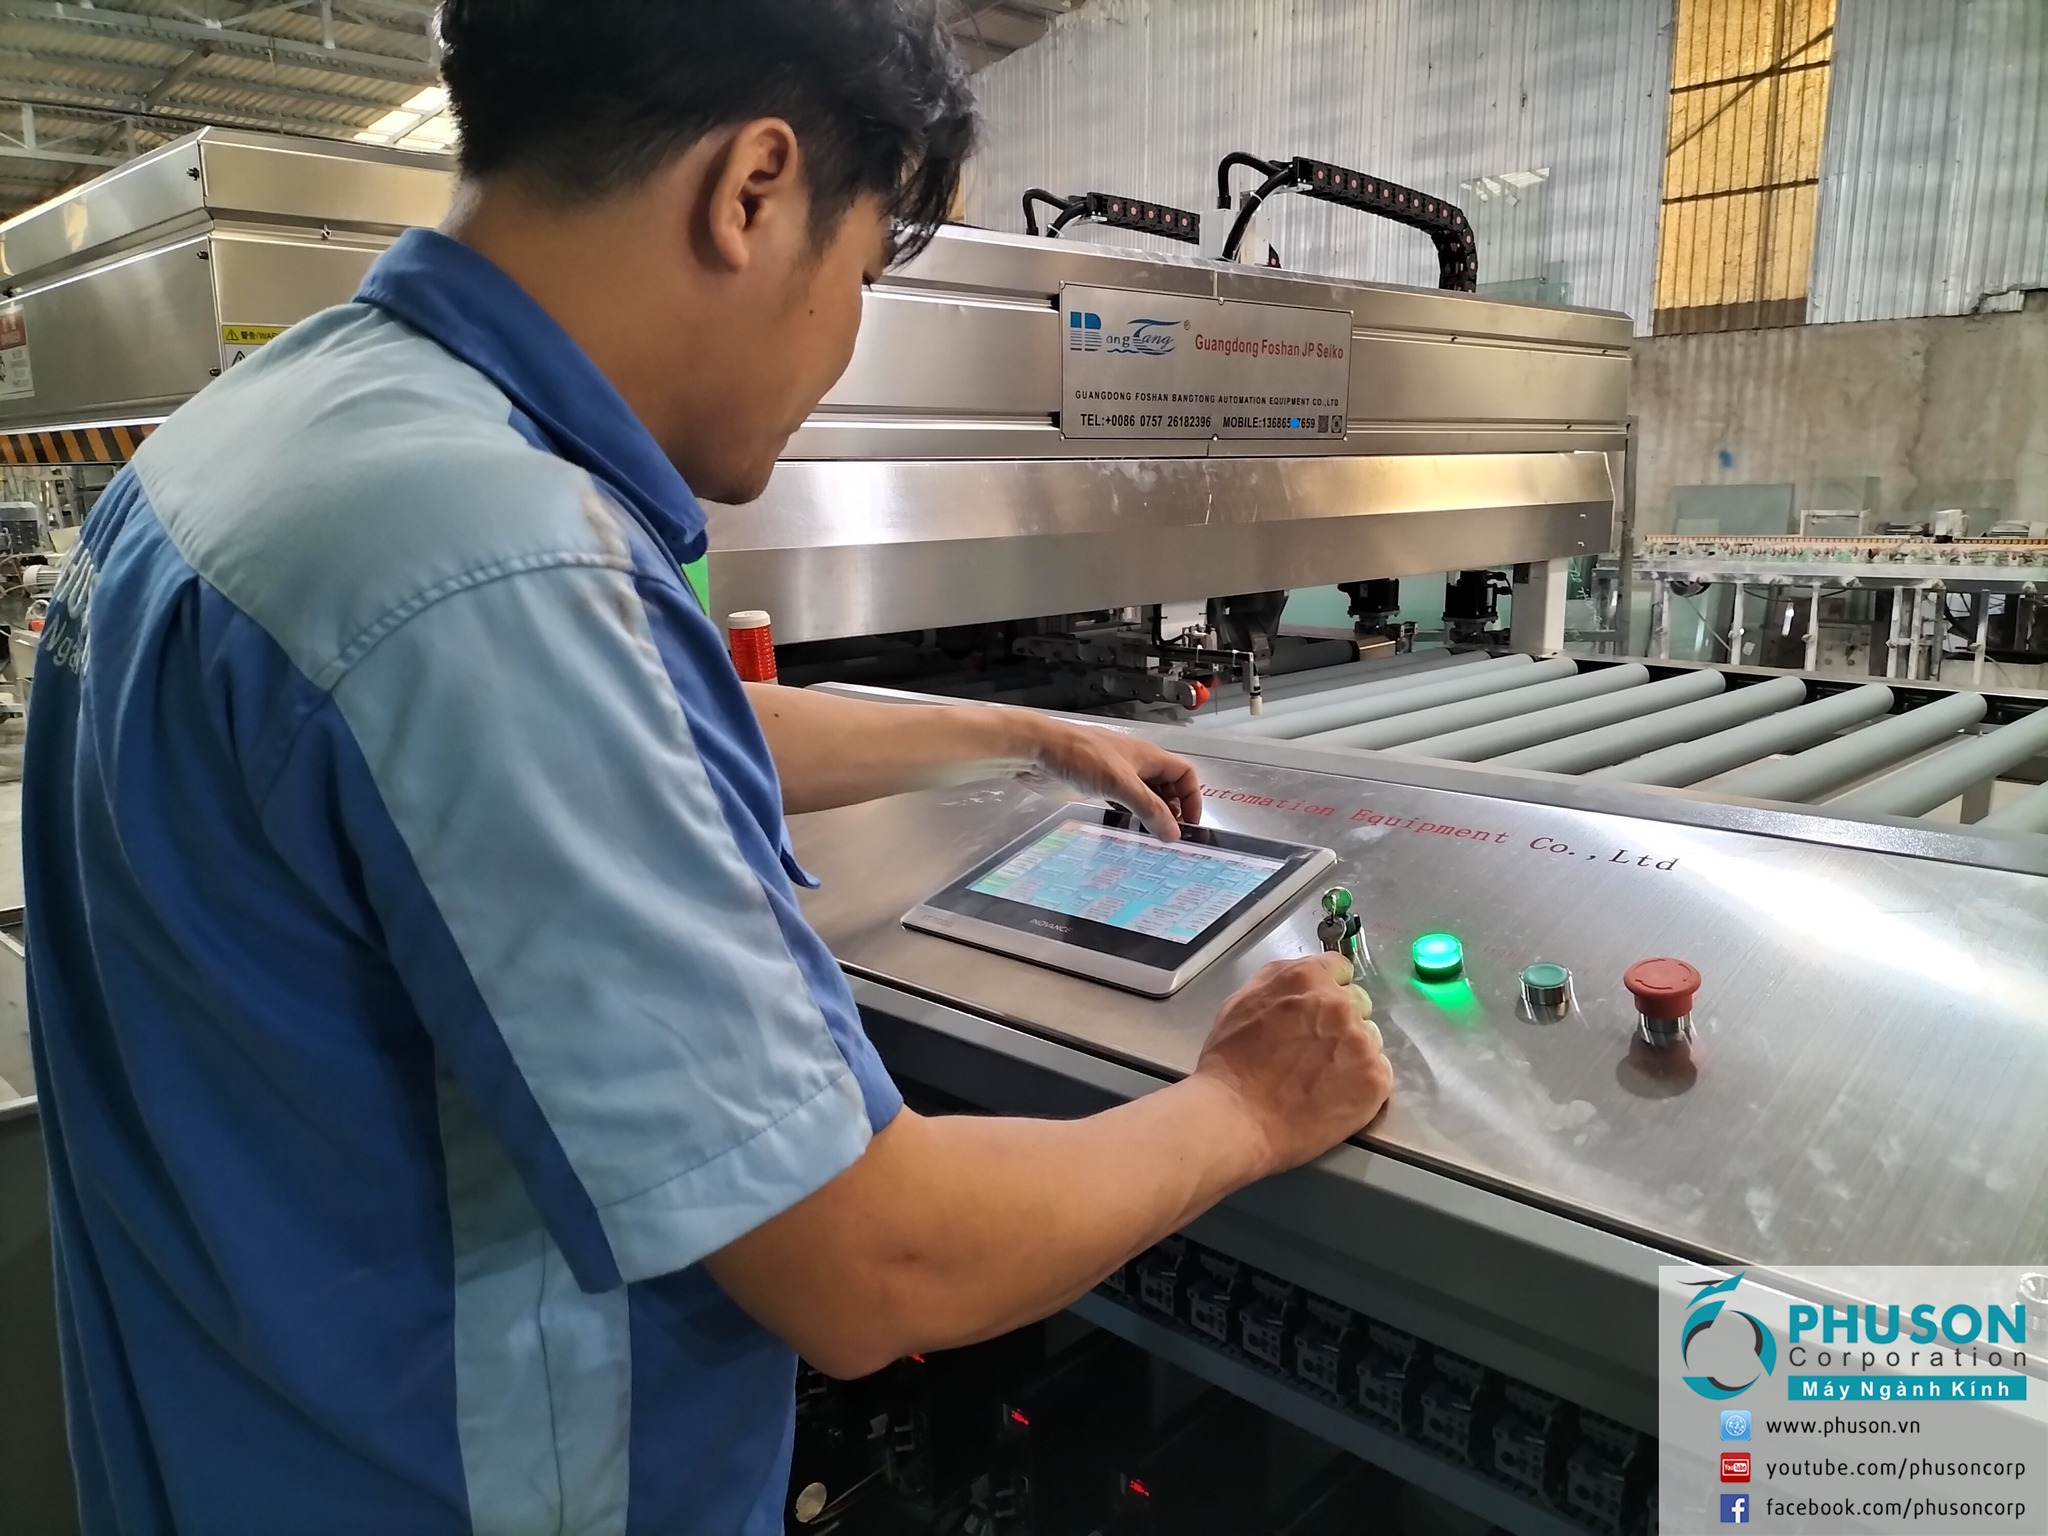 PHU SON Corporation HCM hoàn thành lắp đặt và chuyển giao máy tự động mài thô đáy & mép cạnh thẳng kính BANGTONG tại nhà máy PHONG PHU GLASS